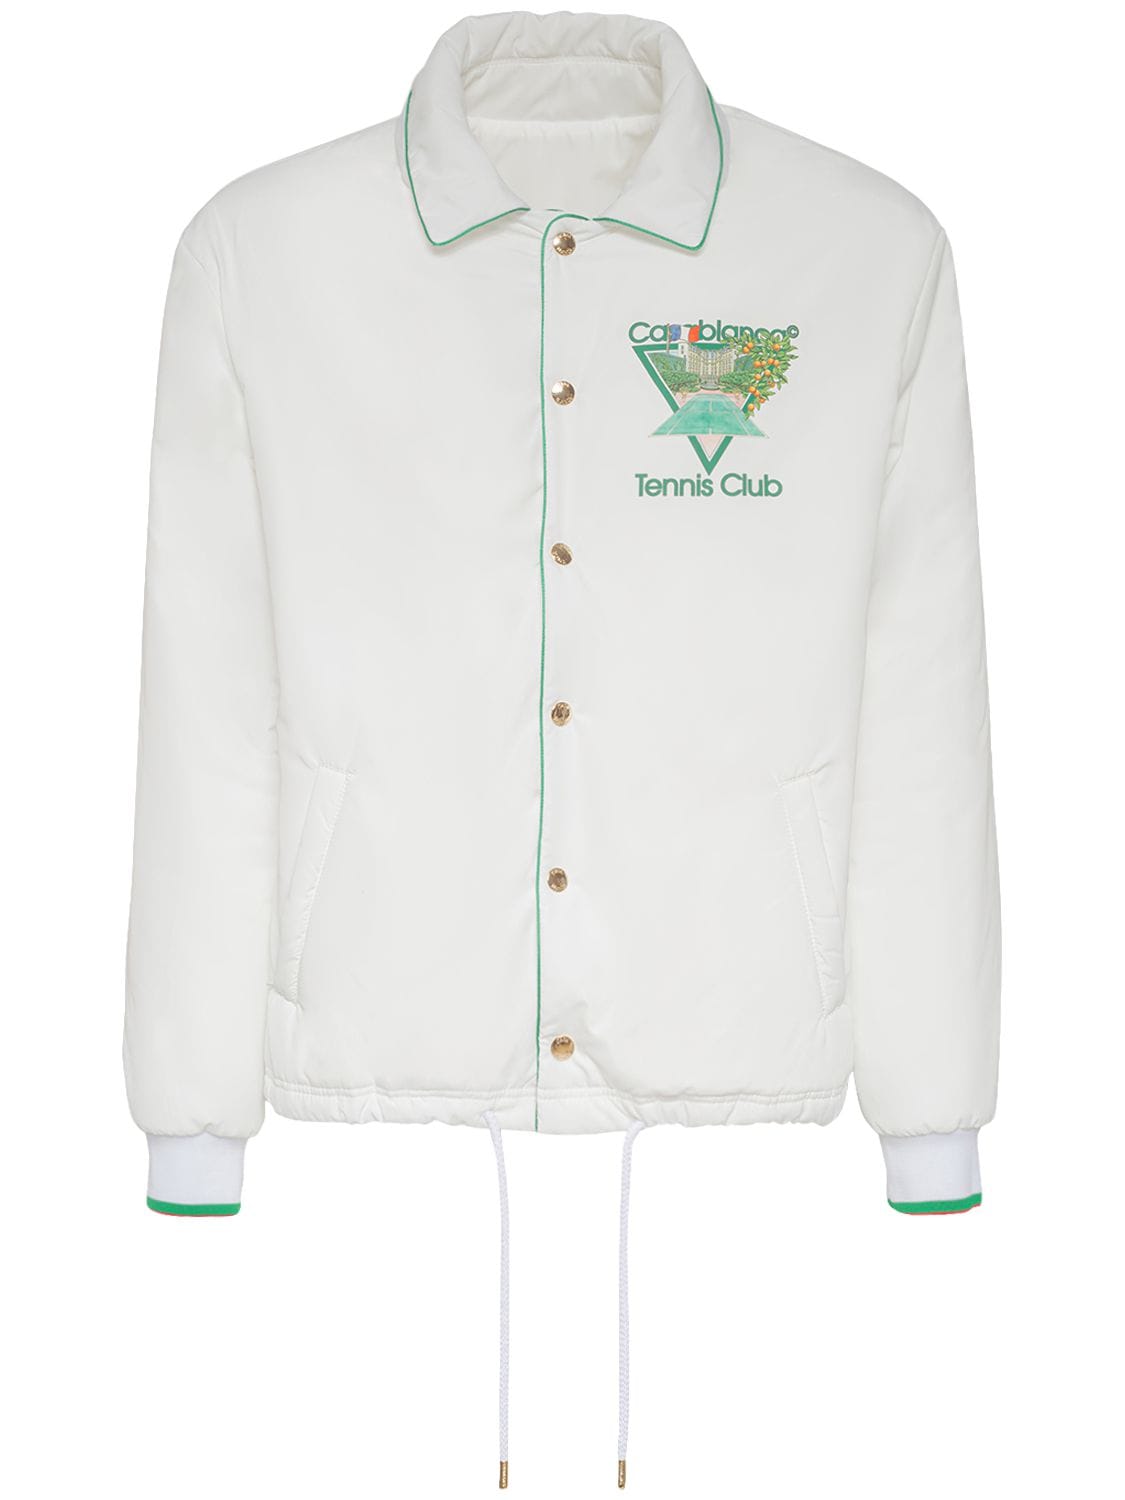 Tennis Club Print Tech Shirt Jacket